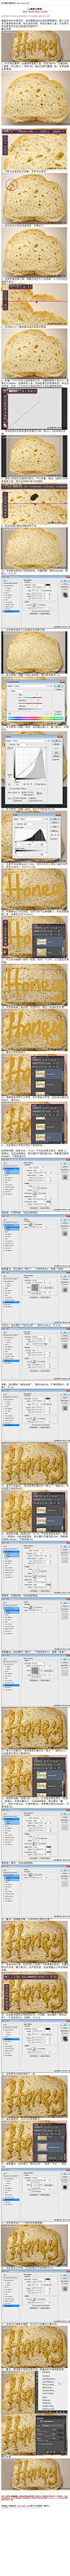 #普通字效#《photoshop蜂蜜字教程》 蜂蜜字制作非常讲究。首先需要选好合适的背景素材，输入文字后还需要简单处理，做出液滴效果。然后多复制几层，分别用不同的图层样式做出剔透的质感即 教程网址：http://www.16xx8.com/photoshop/jiaocheng/2014/133111.html